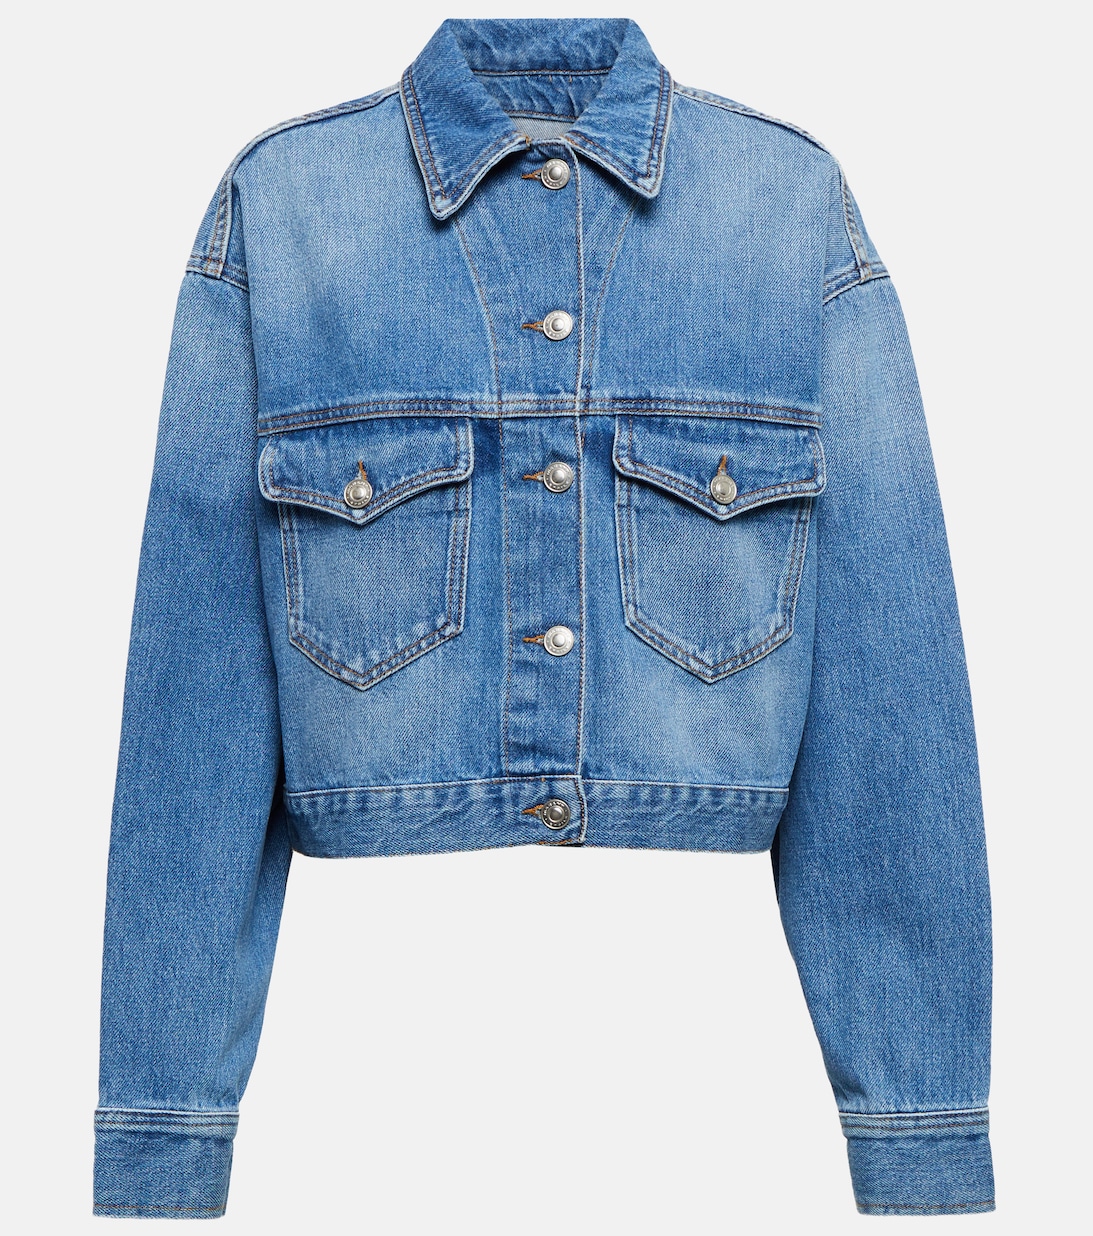 Джинсовая куртка Tadia MARANT ETOILE, синий джинсовая мини юбка vesna marant etoile синий